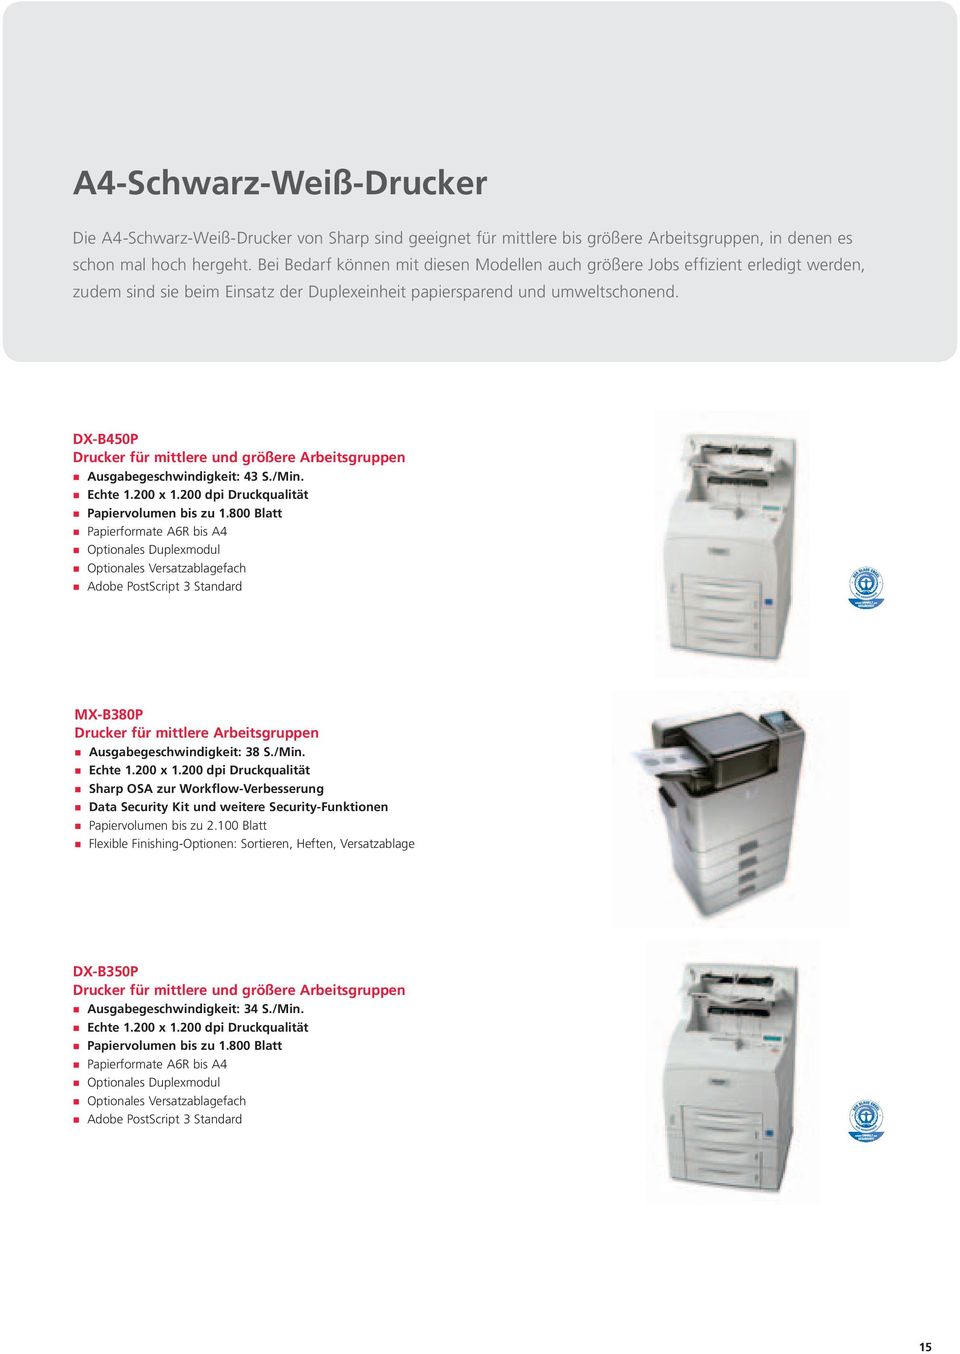 DXB40P Drucker für mittlere und größere Arbeitsgruppen Ausgabegeschwindigkeit: 43 S./Min. Echte 1.00 x 1.00 dpi Druckqualität Papiervolumen bis zu 1.